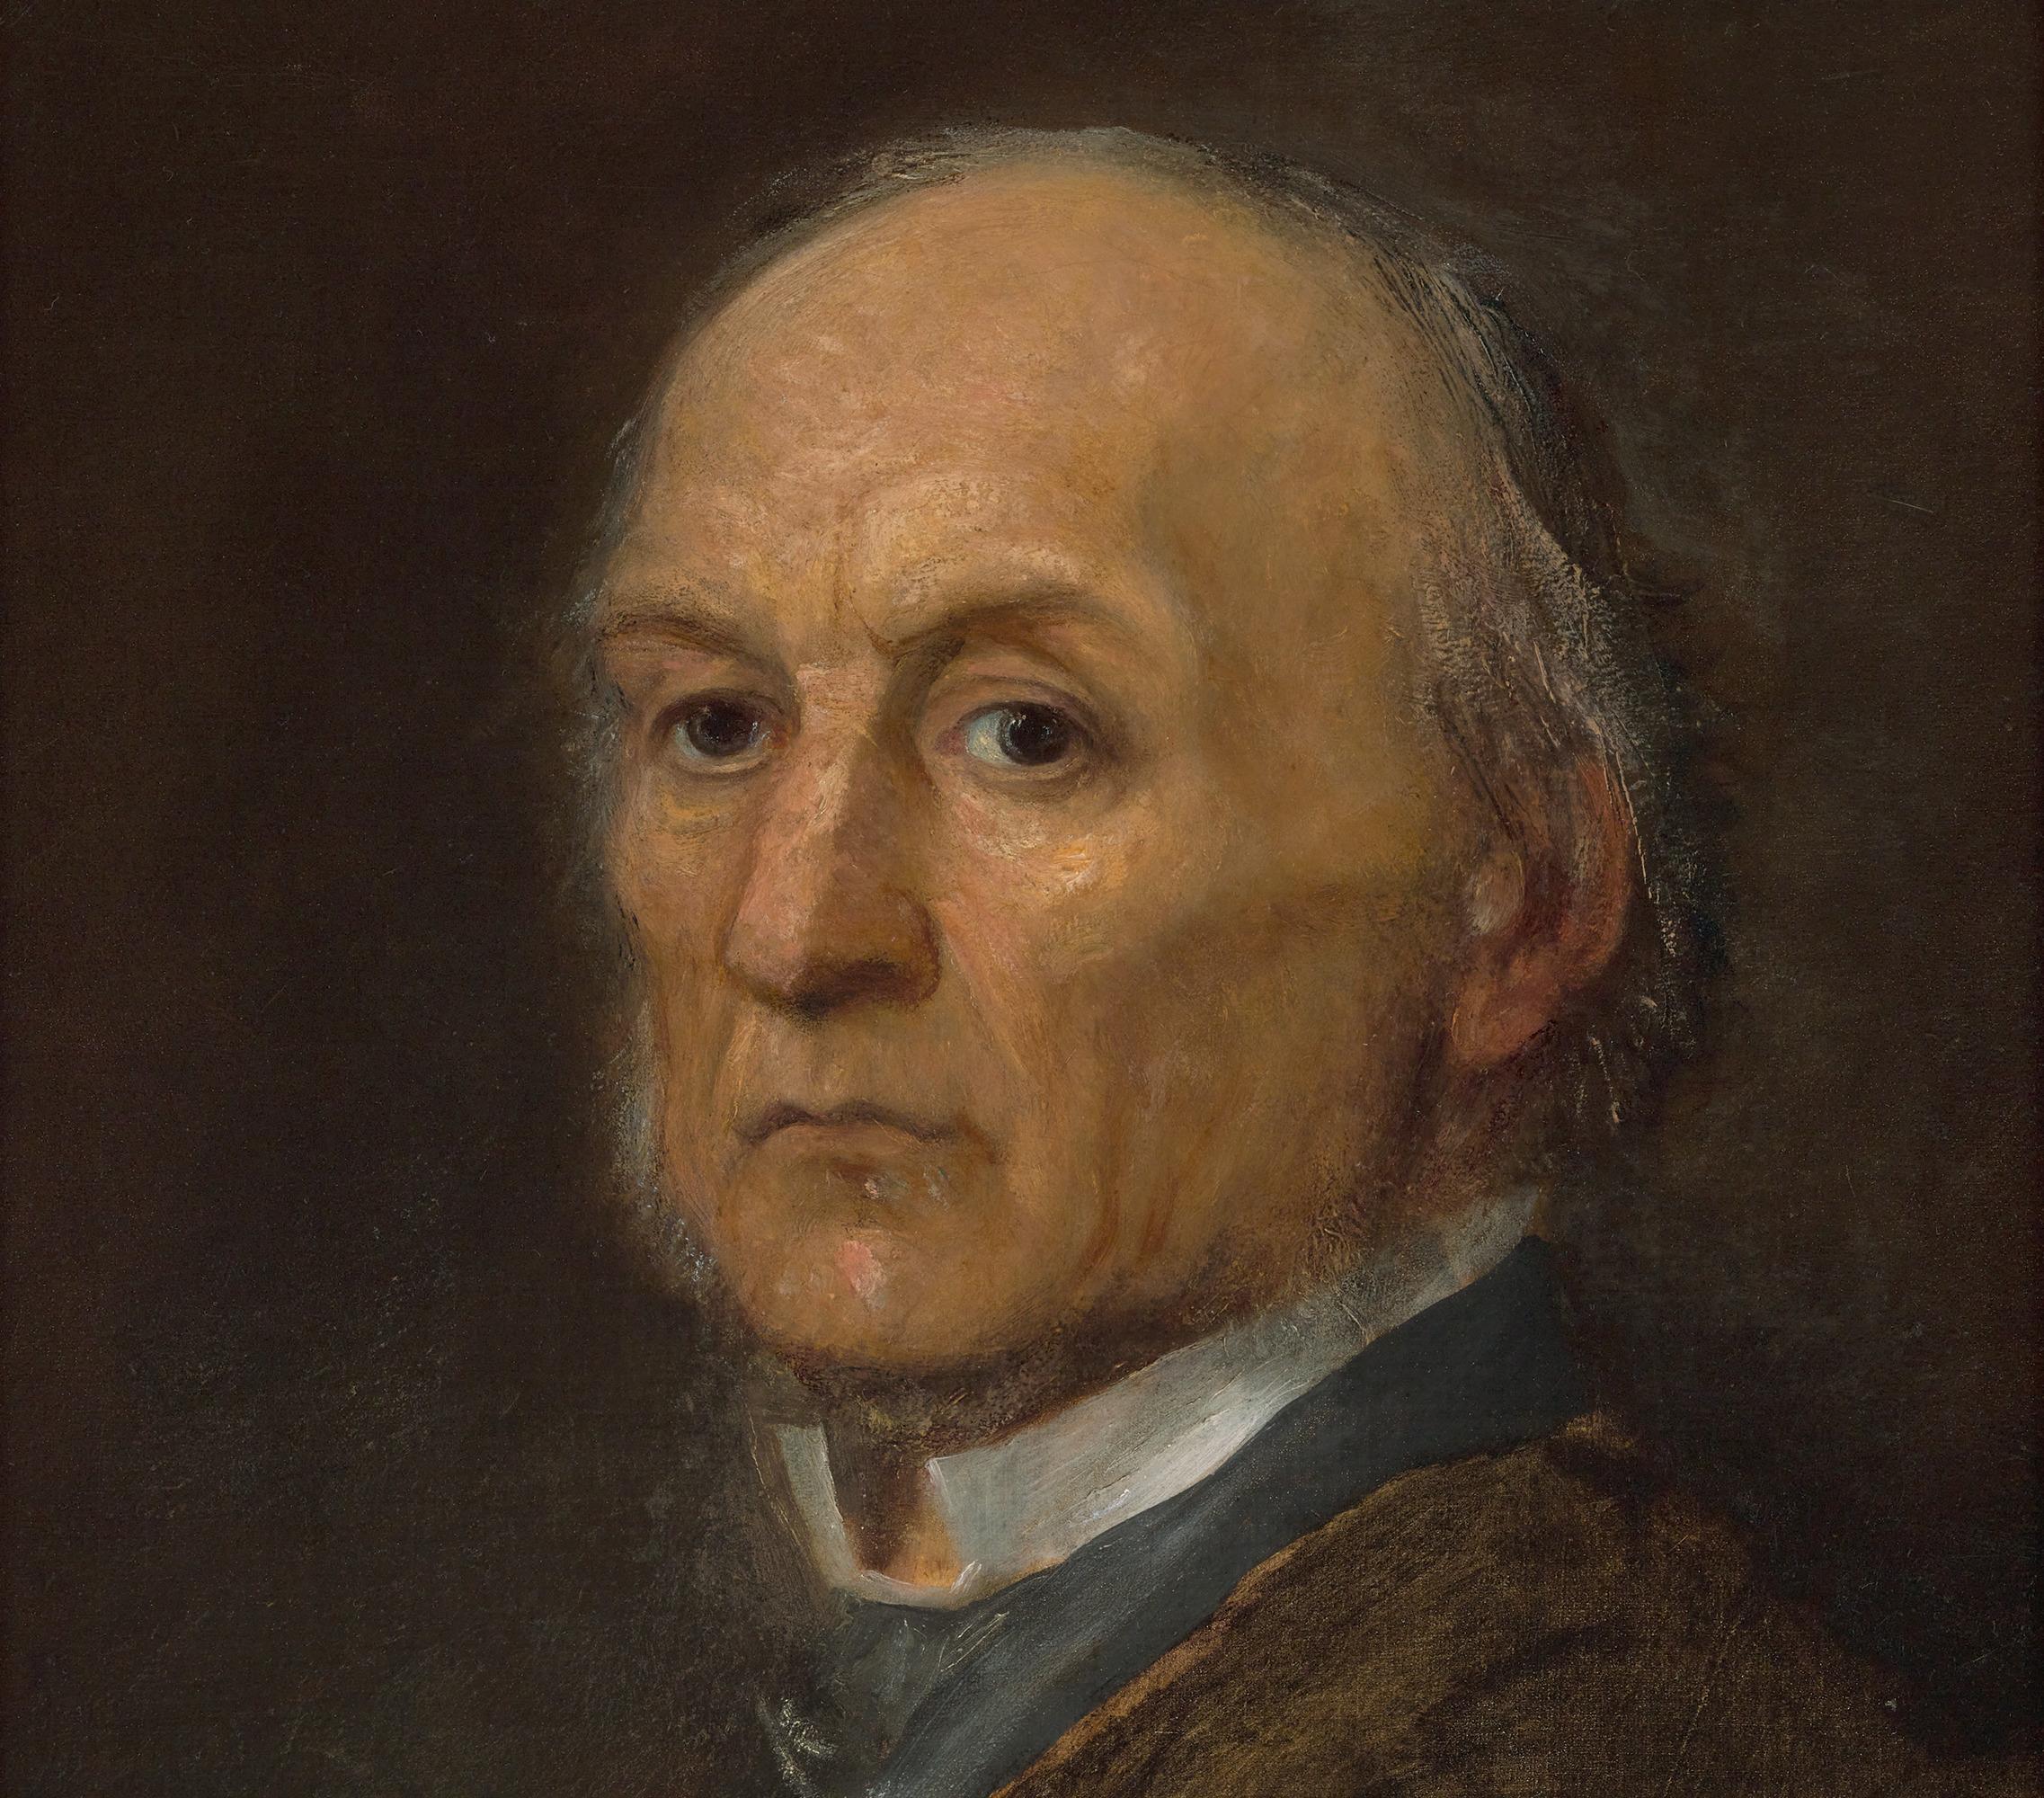 George Frederic Watts
1817-1904  Britannique

Portrait du Premier ministre William Ewart Gladstone

Huile sur toile

Ce portrait exceptionnel capture la ressemblance majestueuse du célèbre 